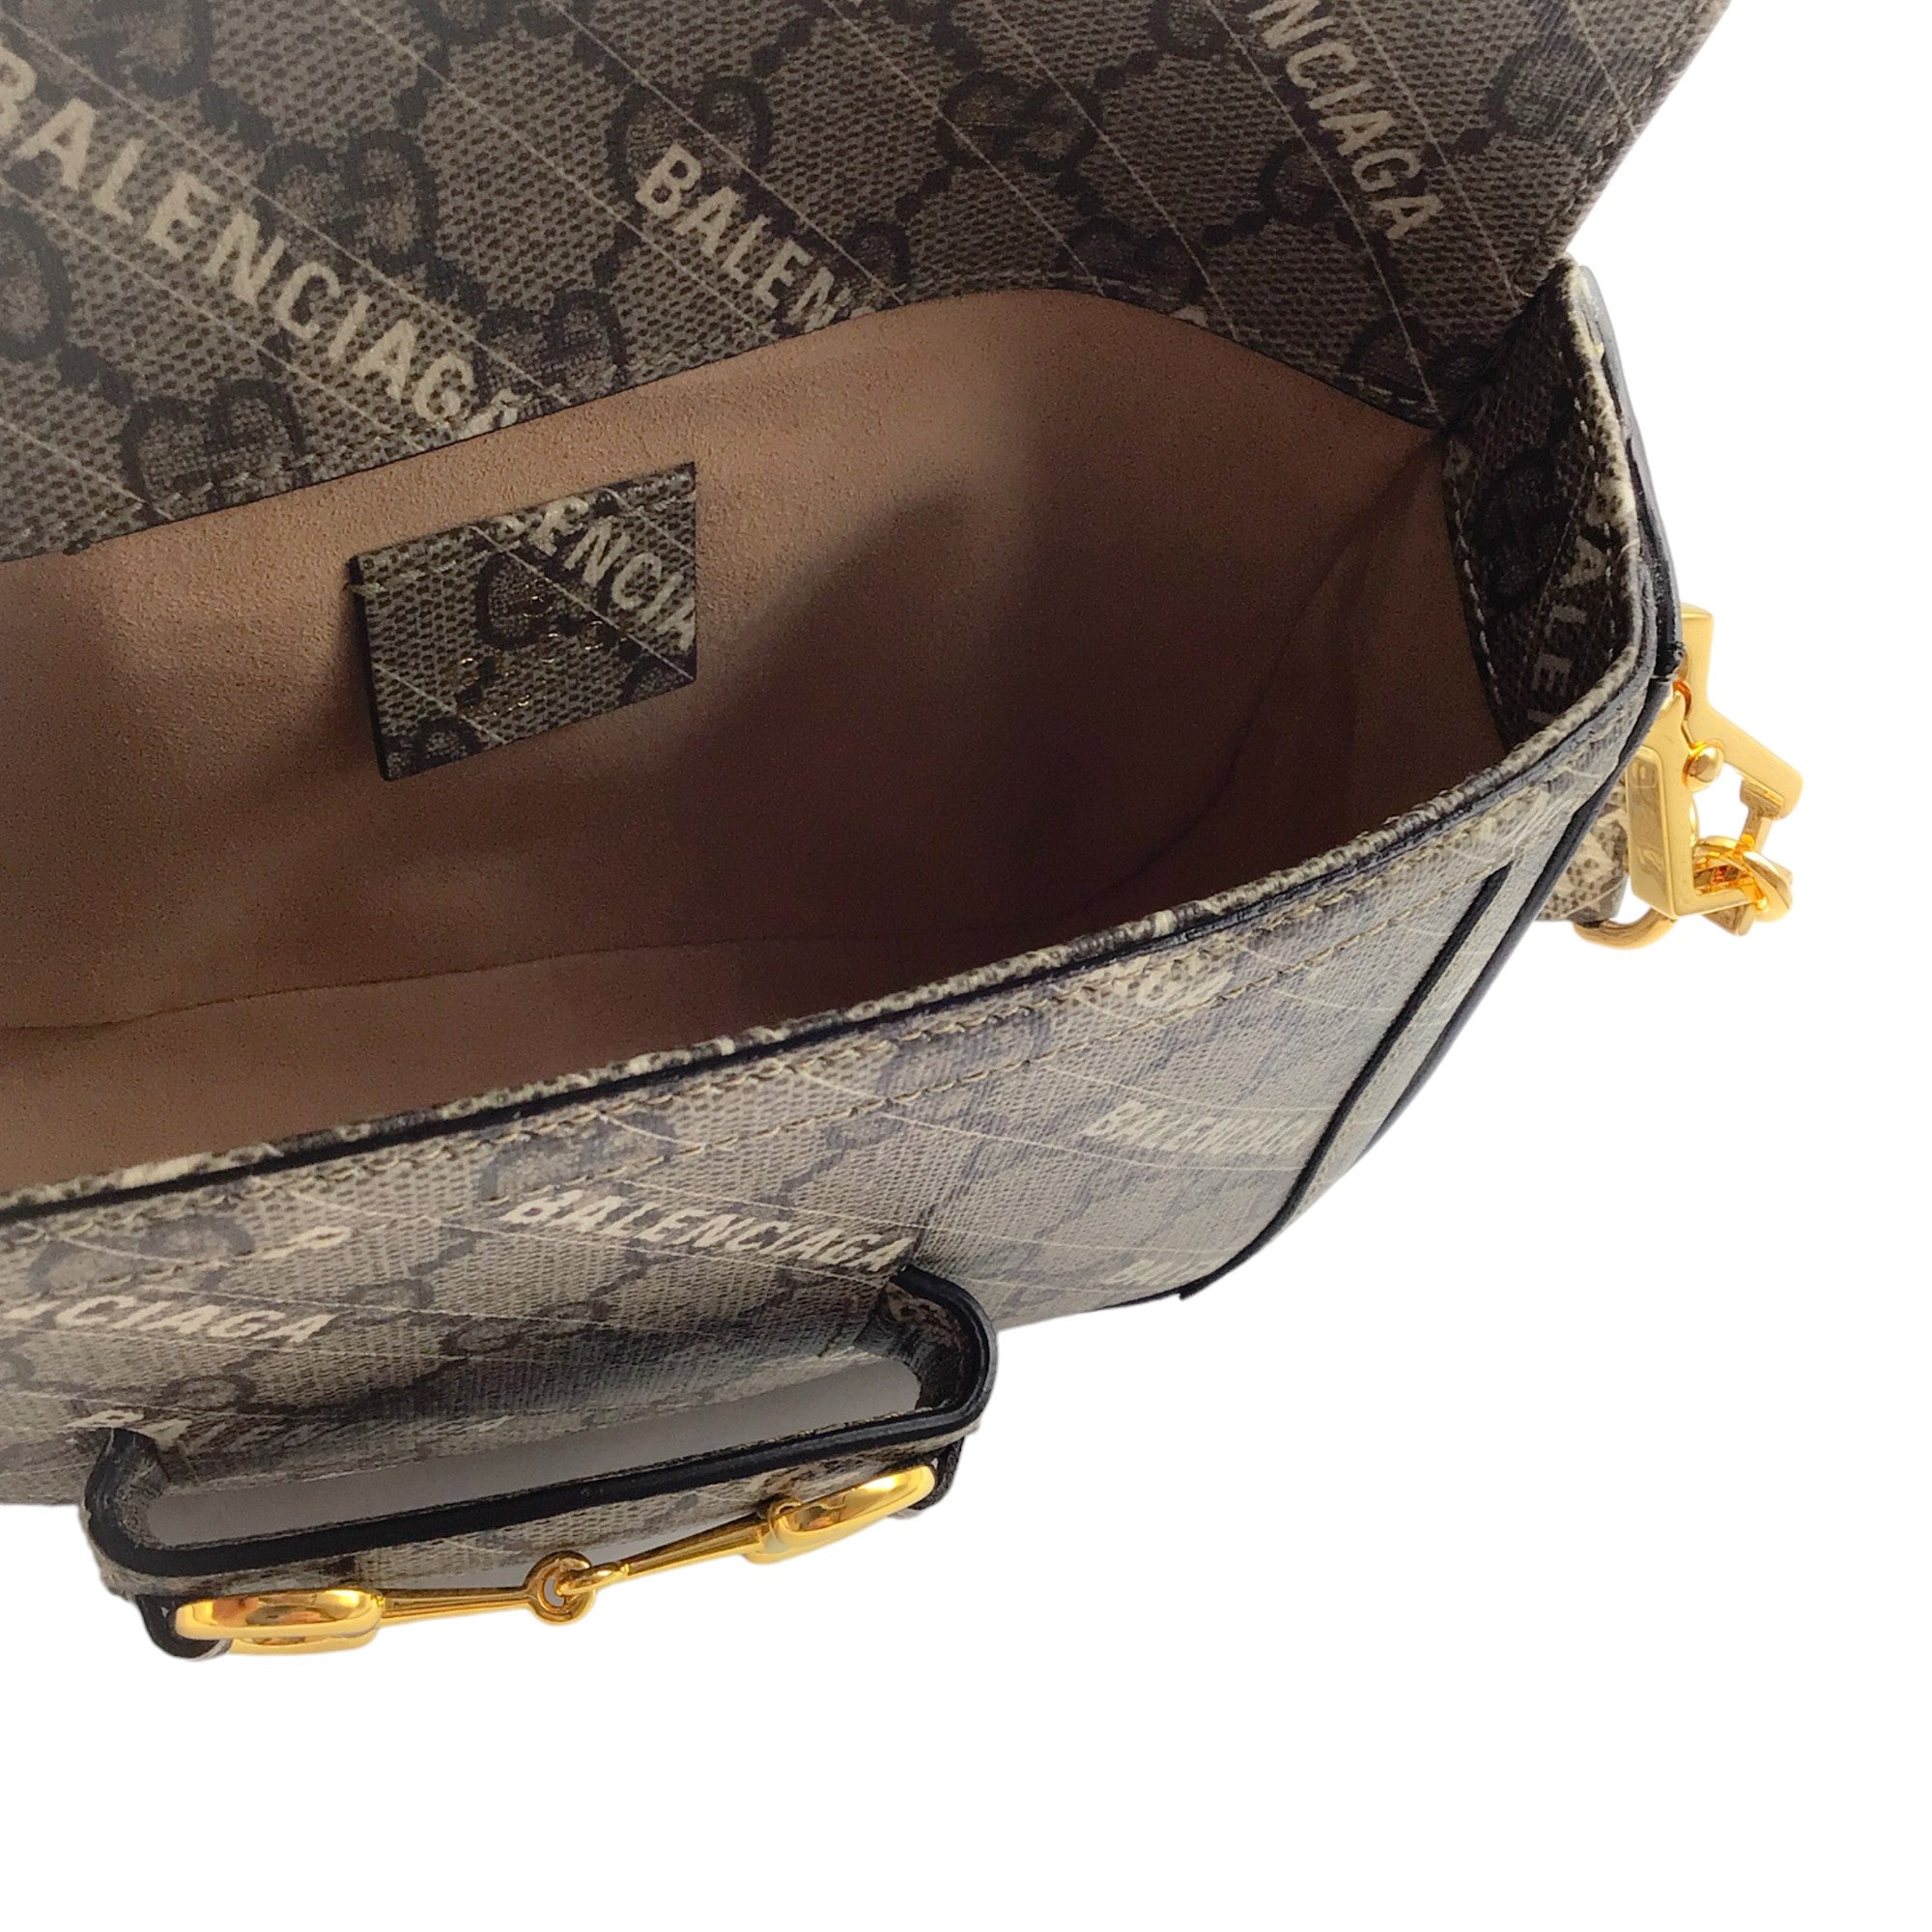 Gucci x Balenciaga Beige Multi GG Supreme Canvas Horsebit 1955 Mini Bag